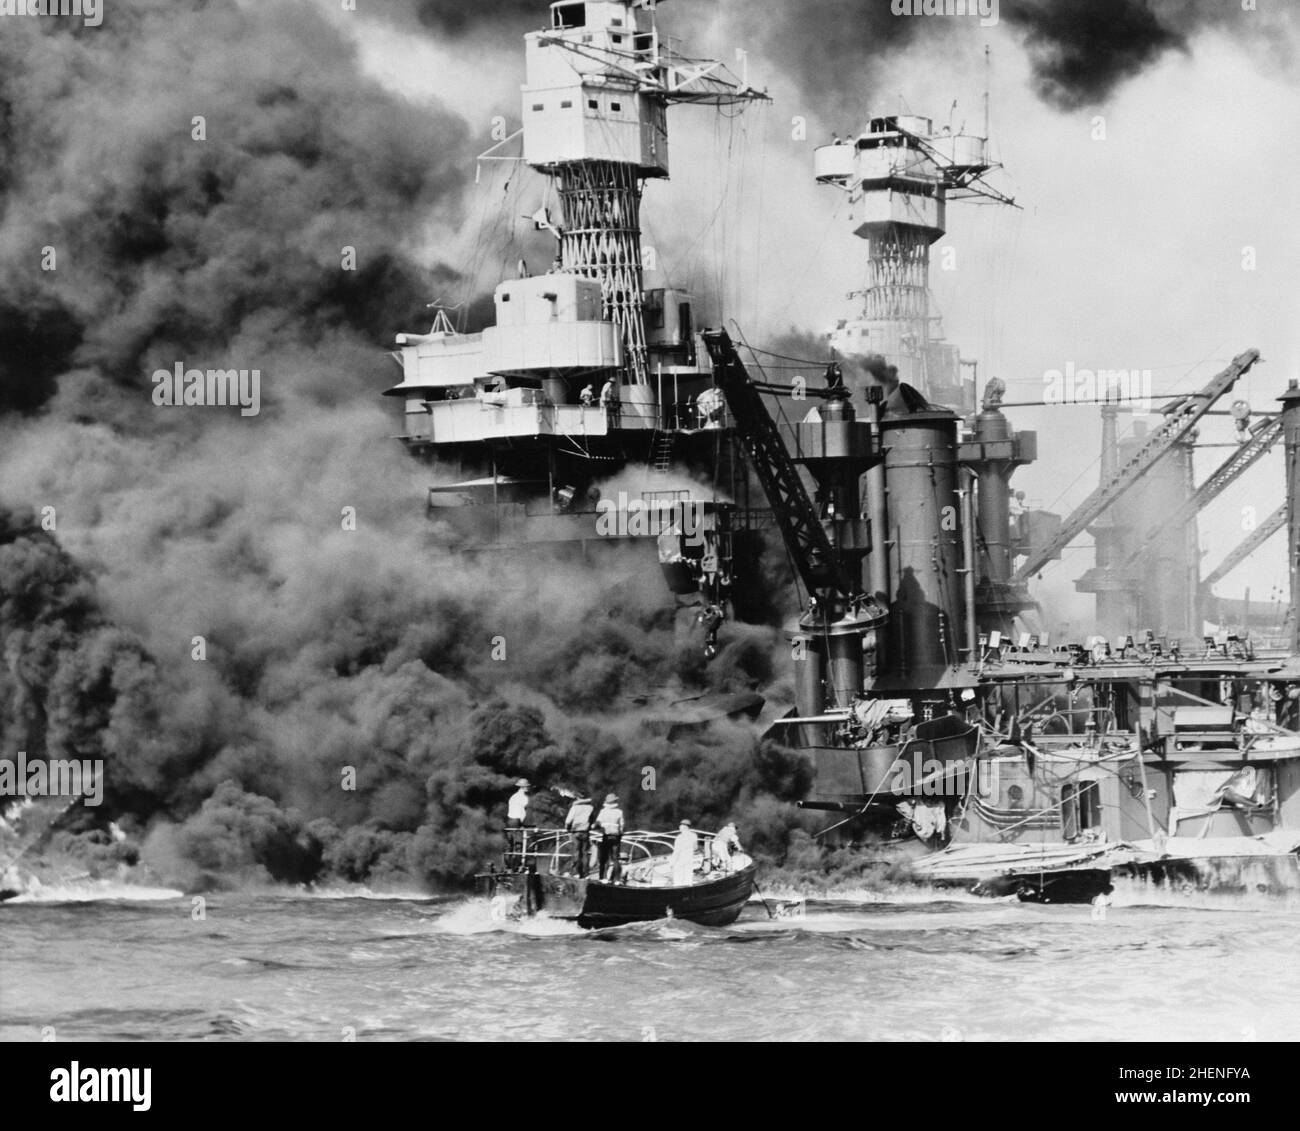 Un tir de sauvetage passant devant l'épave brûlante de l'USS West Virginia pendant l'attaque sur Pearl Harbor Banque D'Images